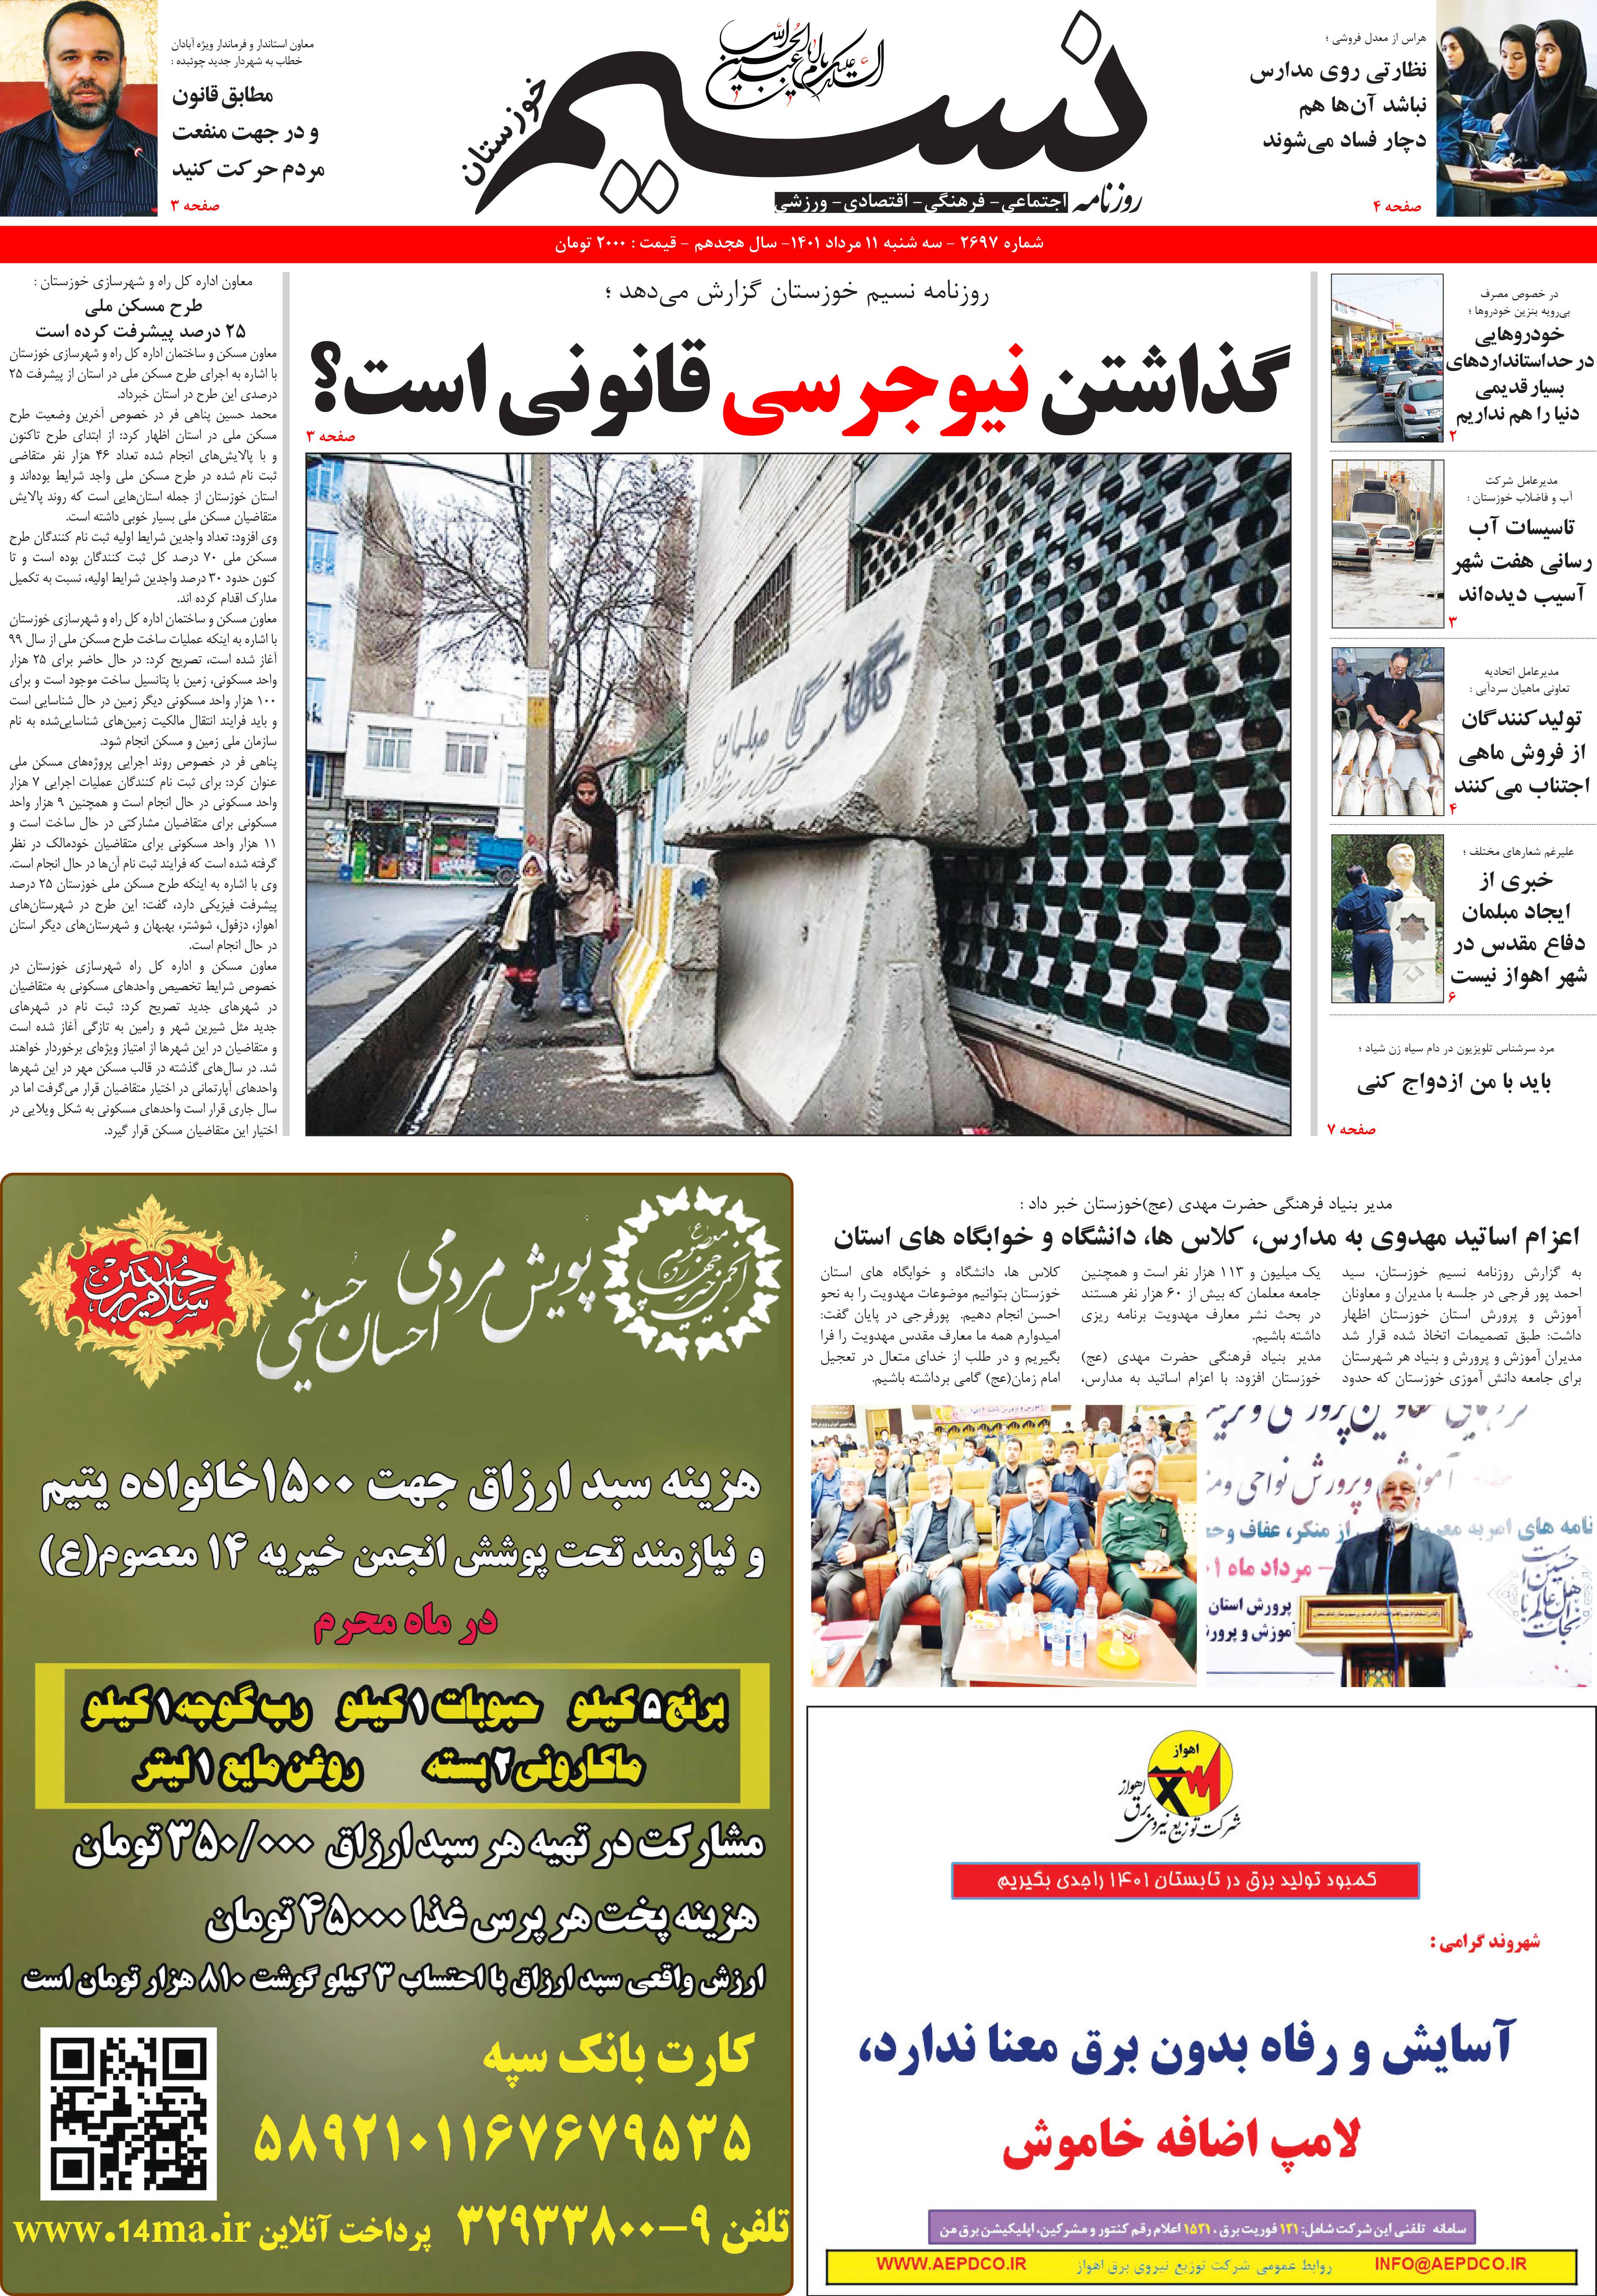 صفحه اصلی روزنامه نسیم شماره 2697 